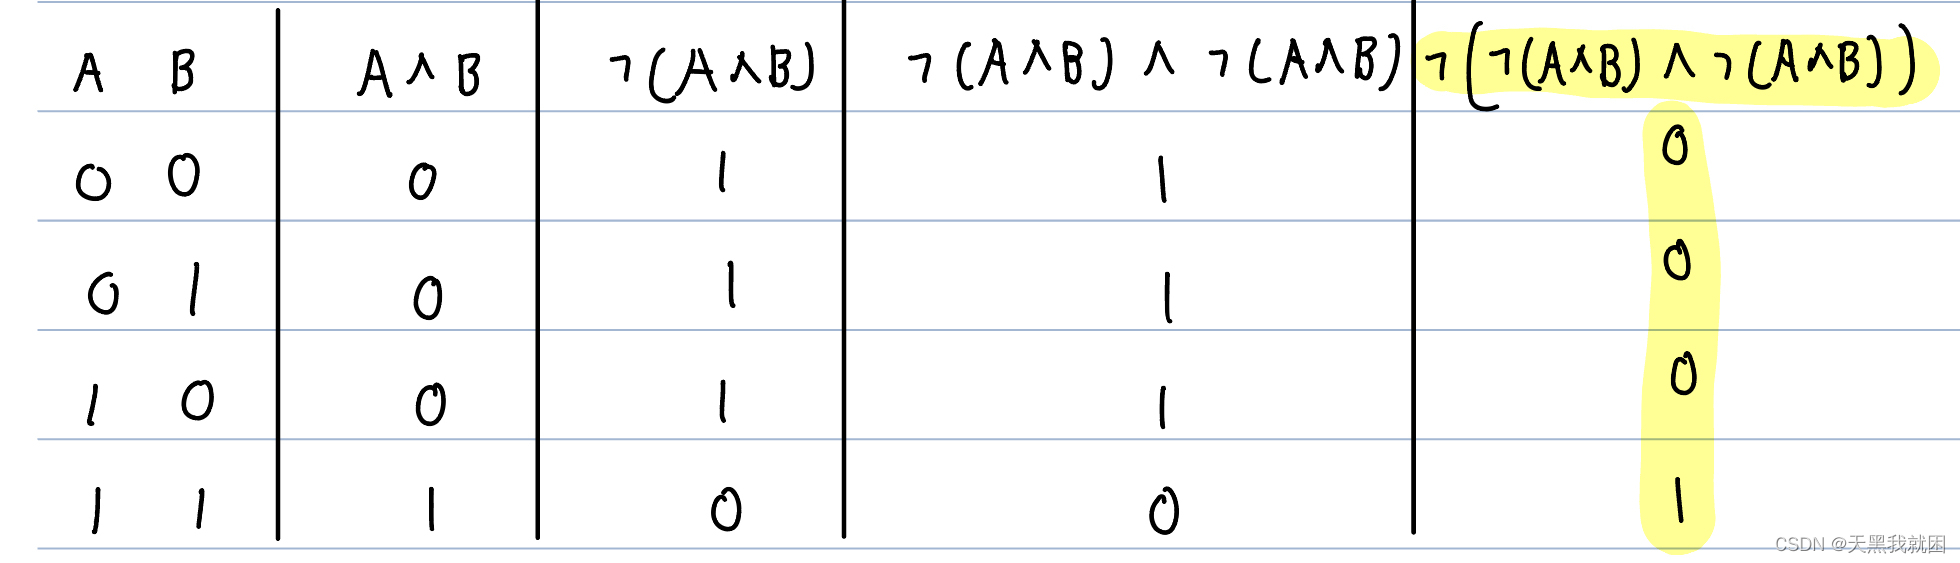 利用“与非”运算实现布尔代数中的与，或，非三种运算